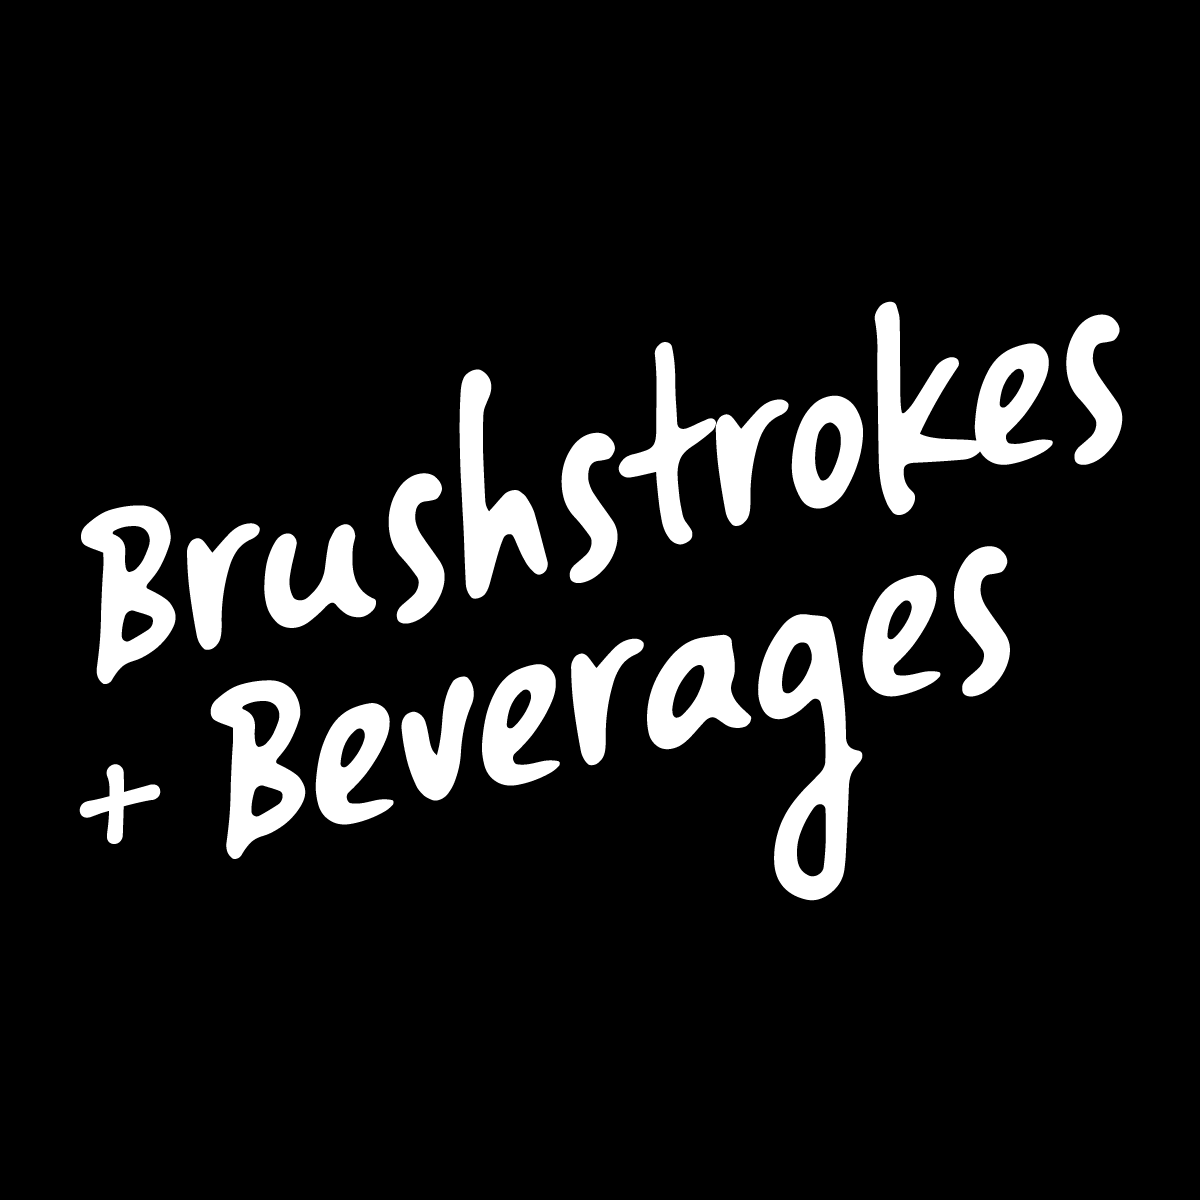 Brushstrokes + Beverages